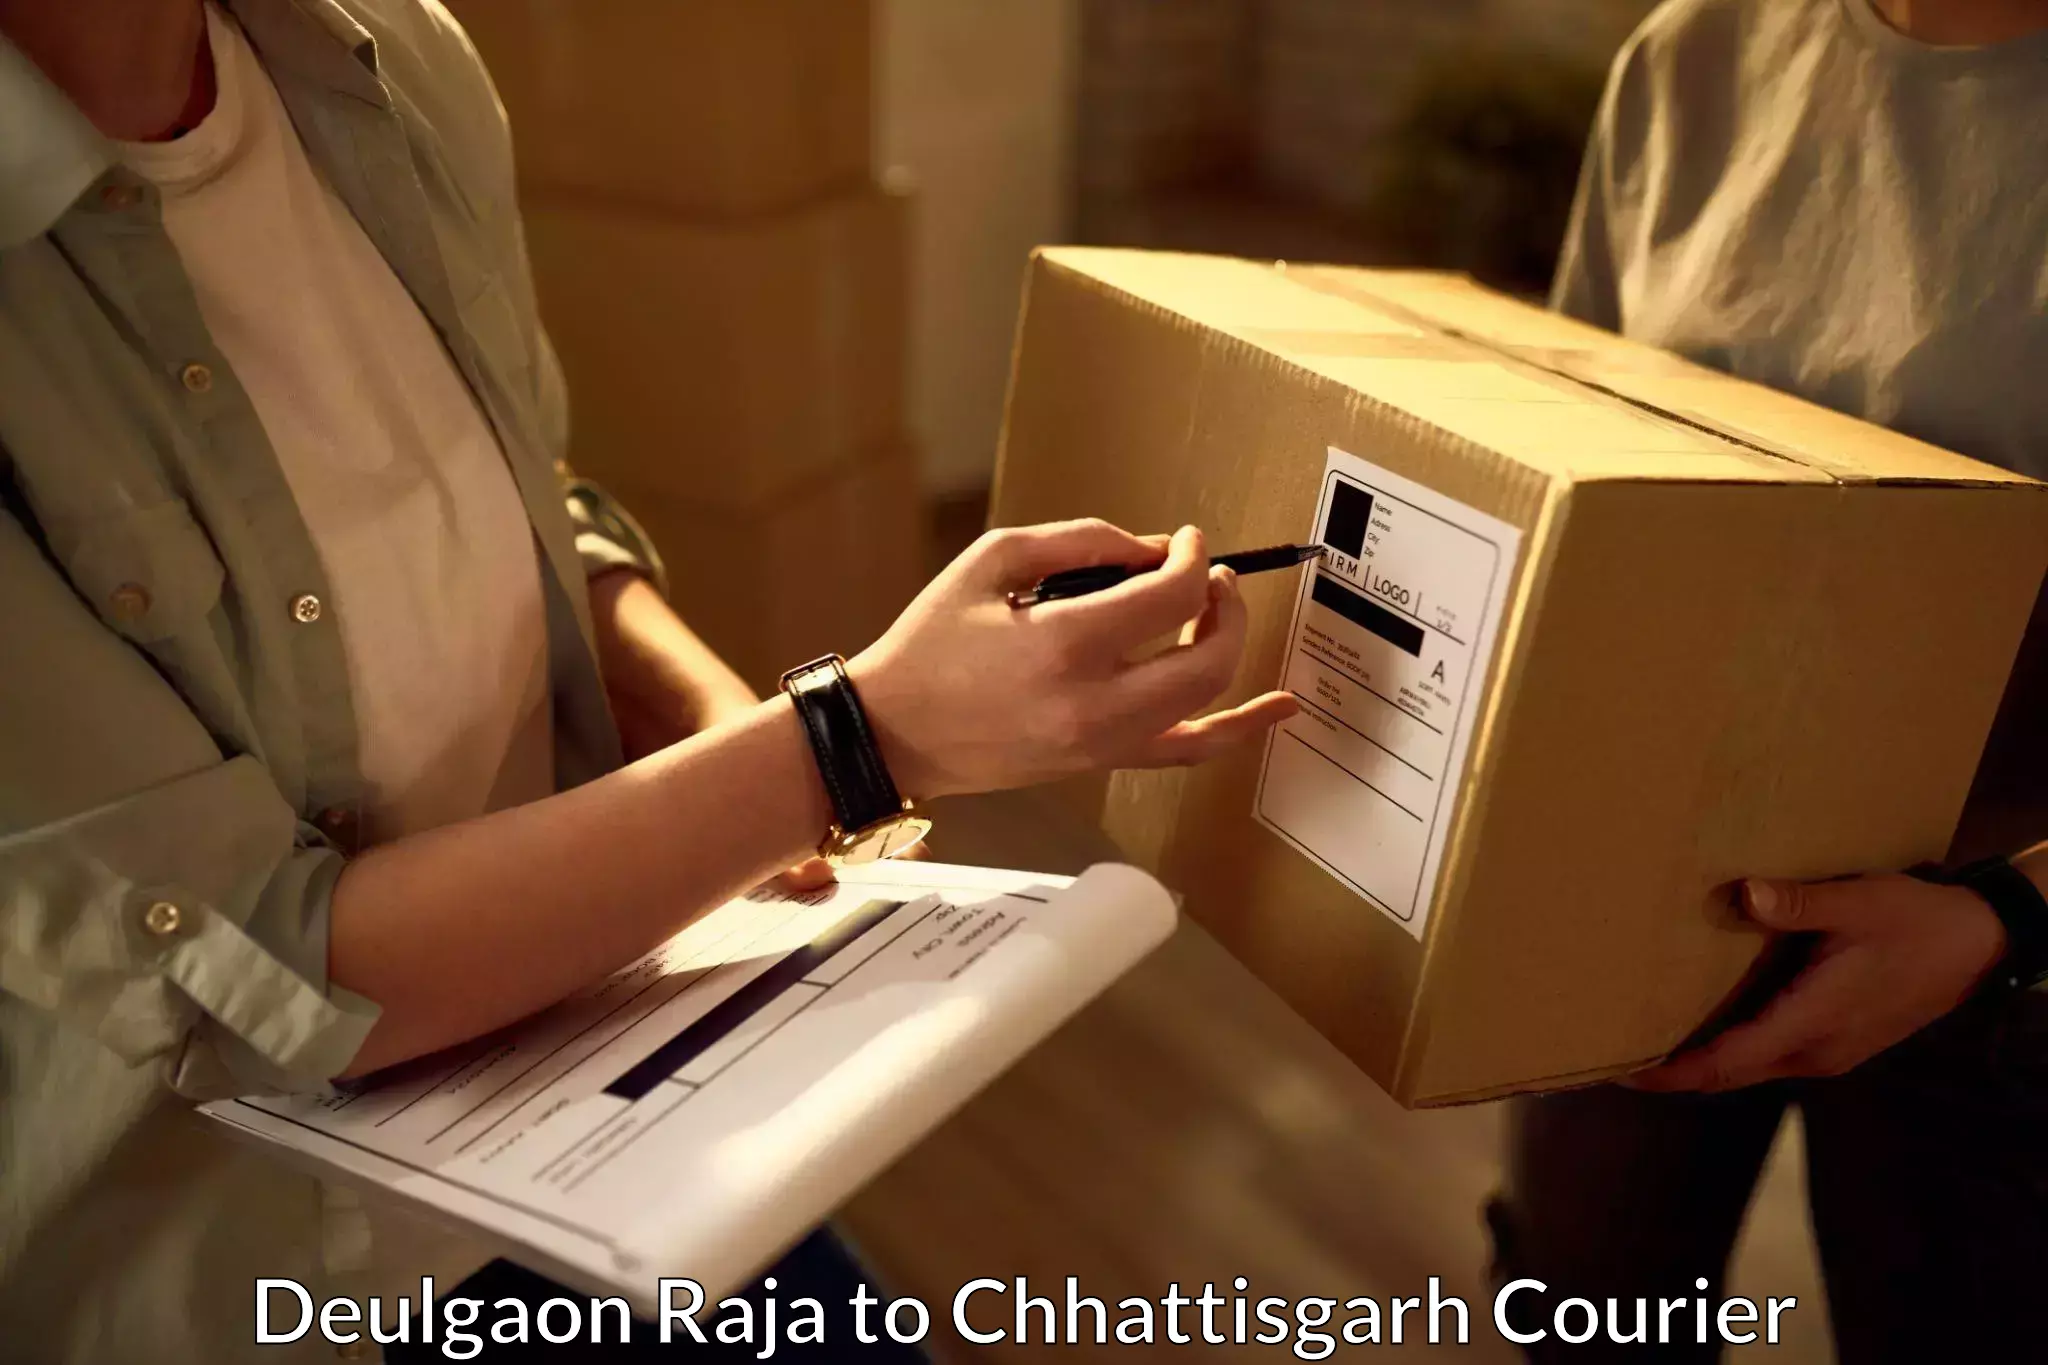 Premium courier services Deulgaon Raja to Sakti